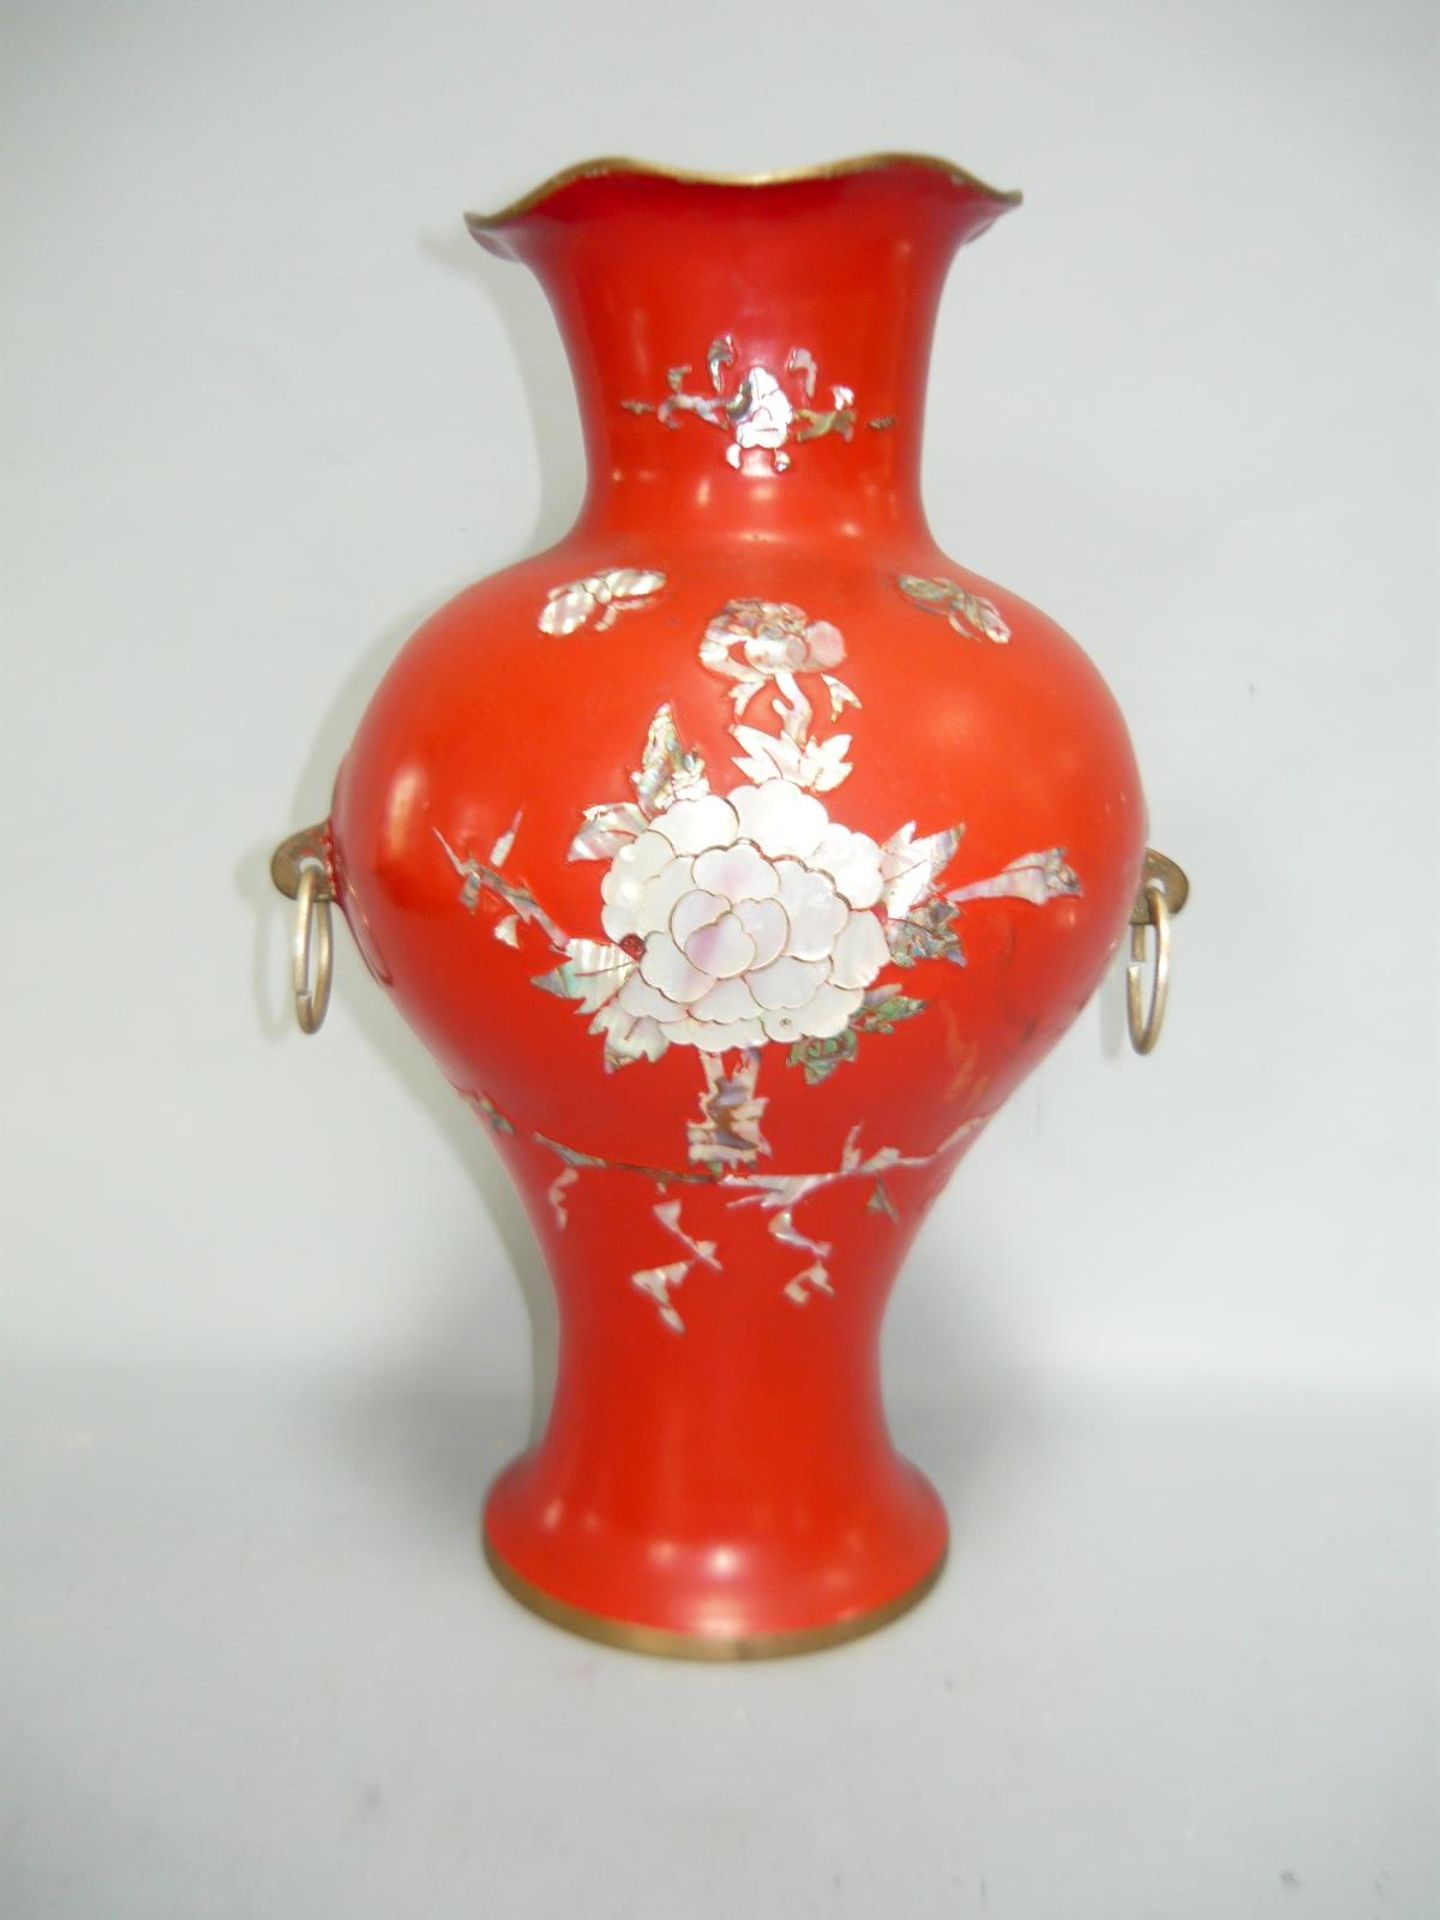 Große Ziervase, Metall, rot bemalt und mit Perlmutt verziert. Asien um 1900. H. 26cm. Altersspuren.